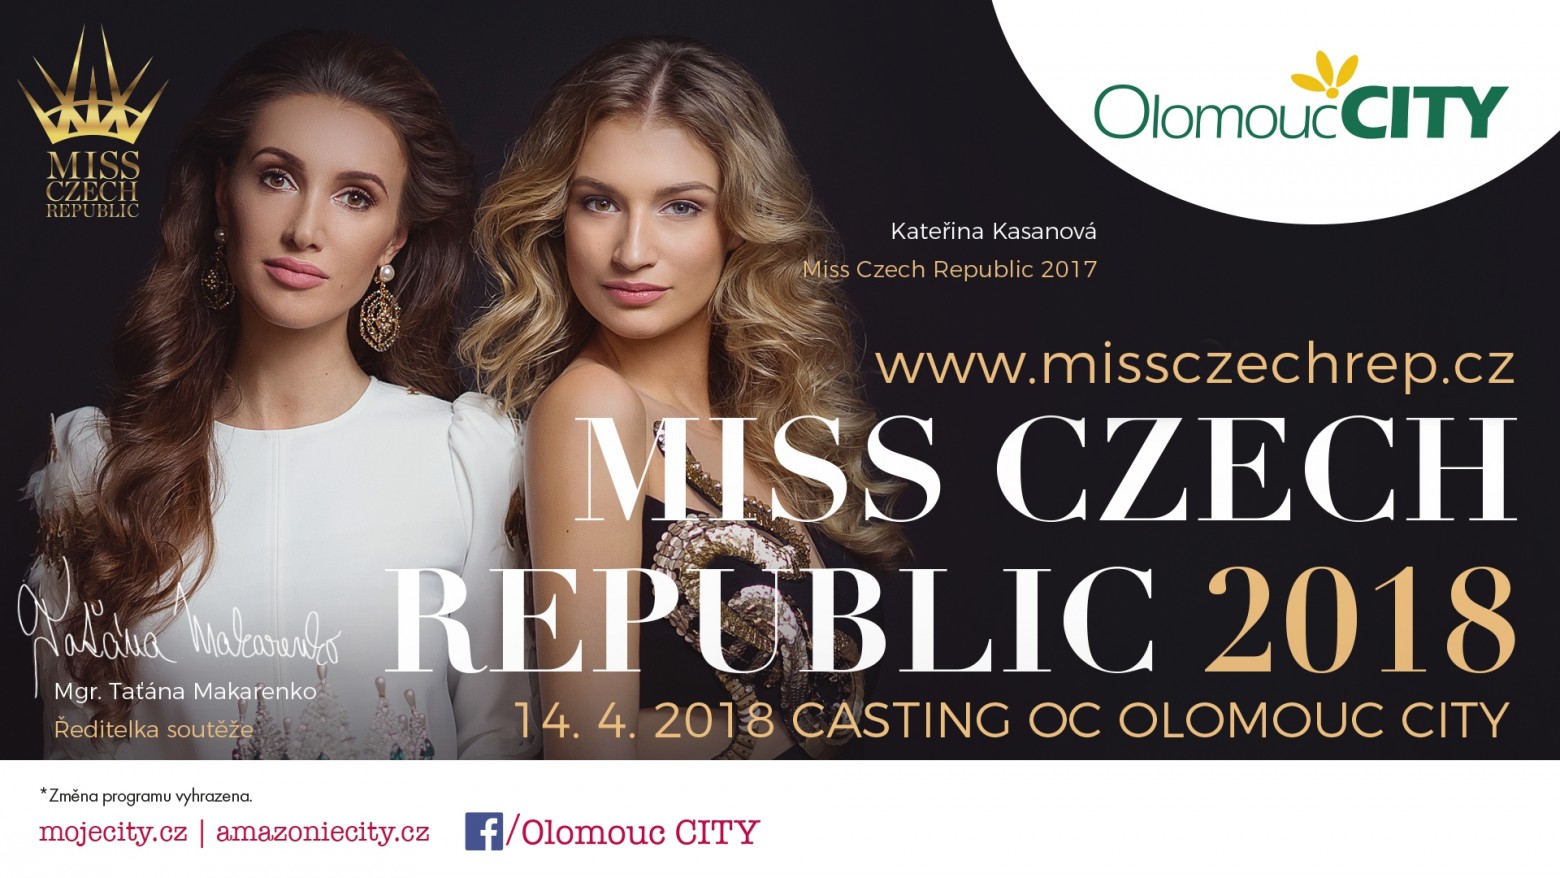 Devátý casting v Olomouci již 14.4.2018